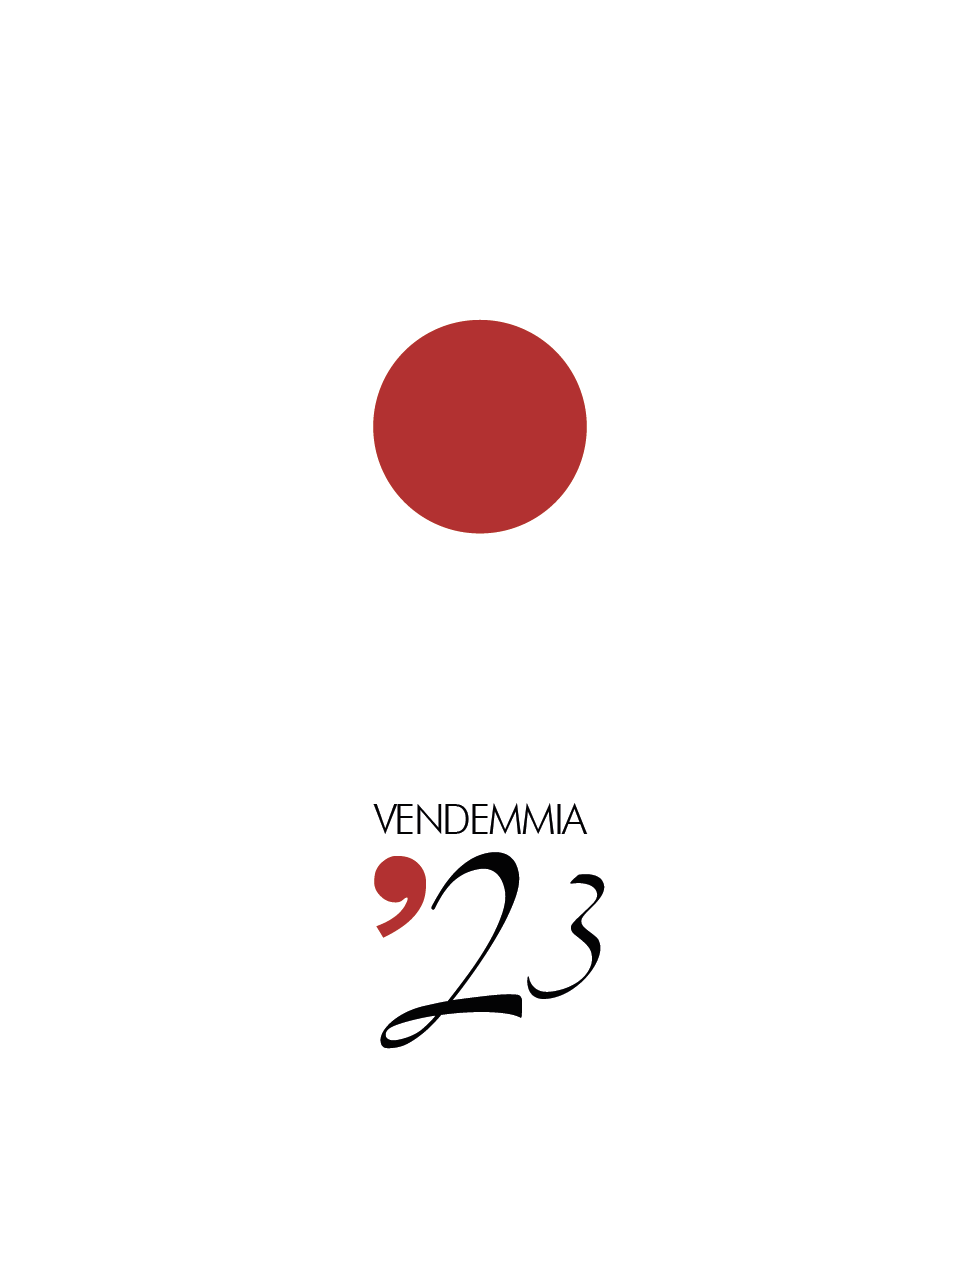 Etichetta per bottiglie di vino: sotto a un cerchio  rosso campeggia la scritta "Vendemmia '23"